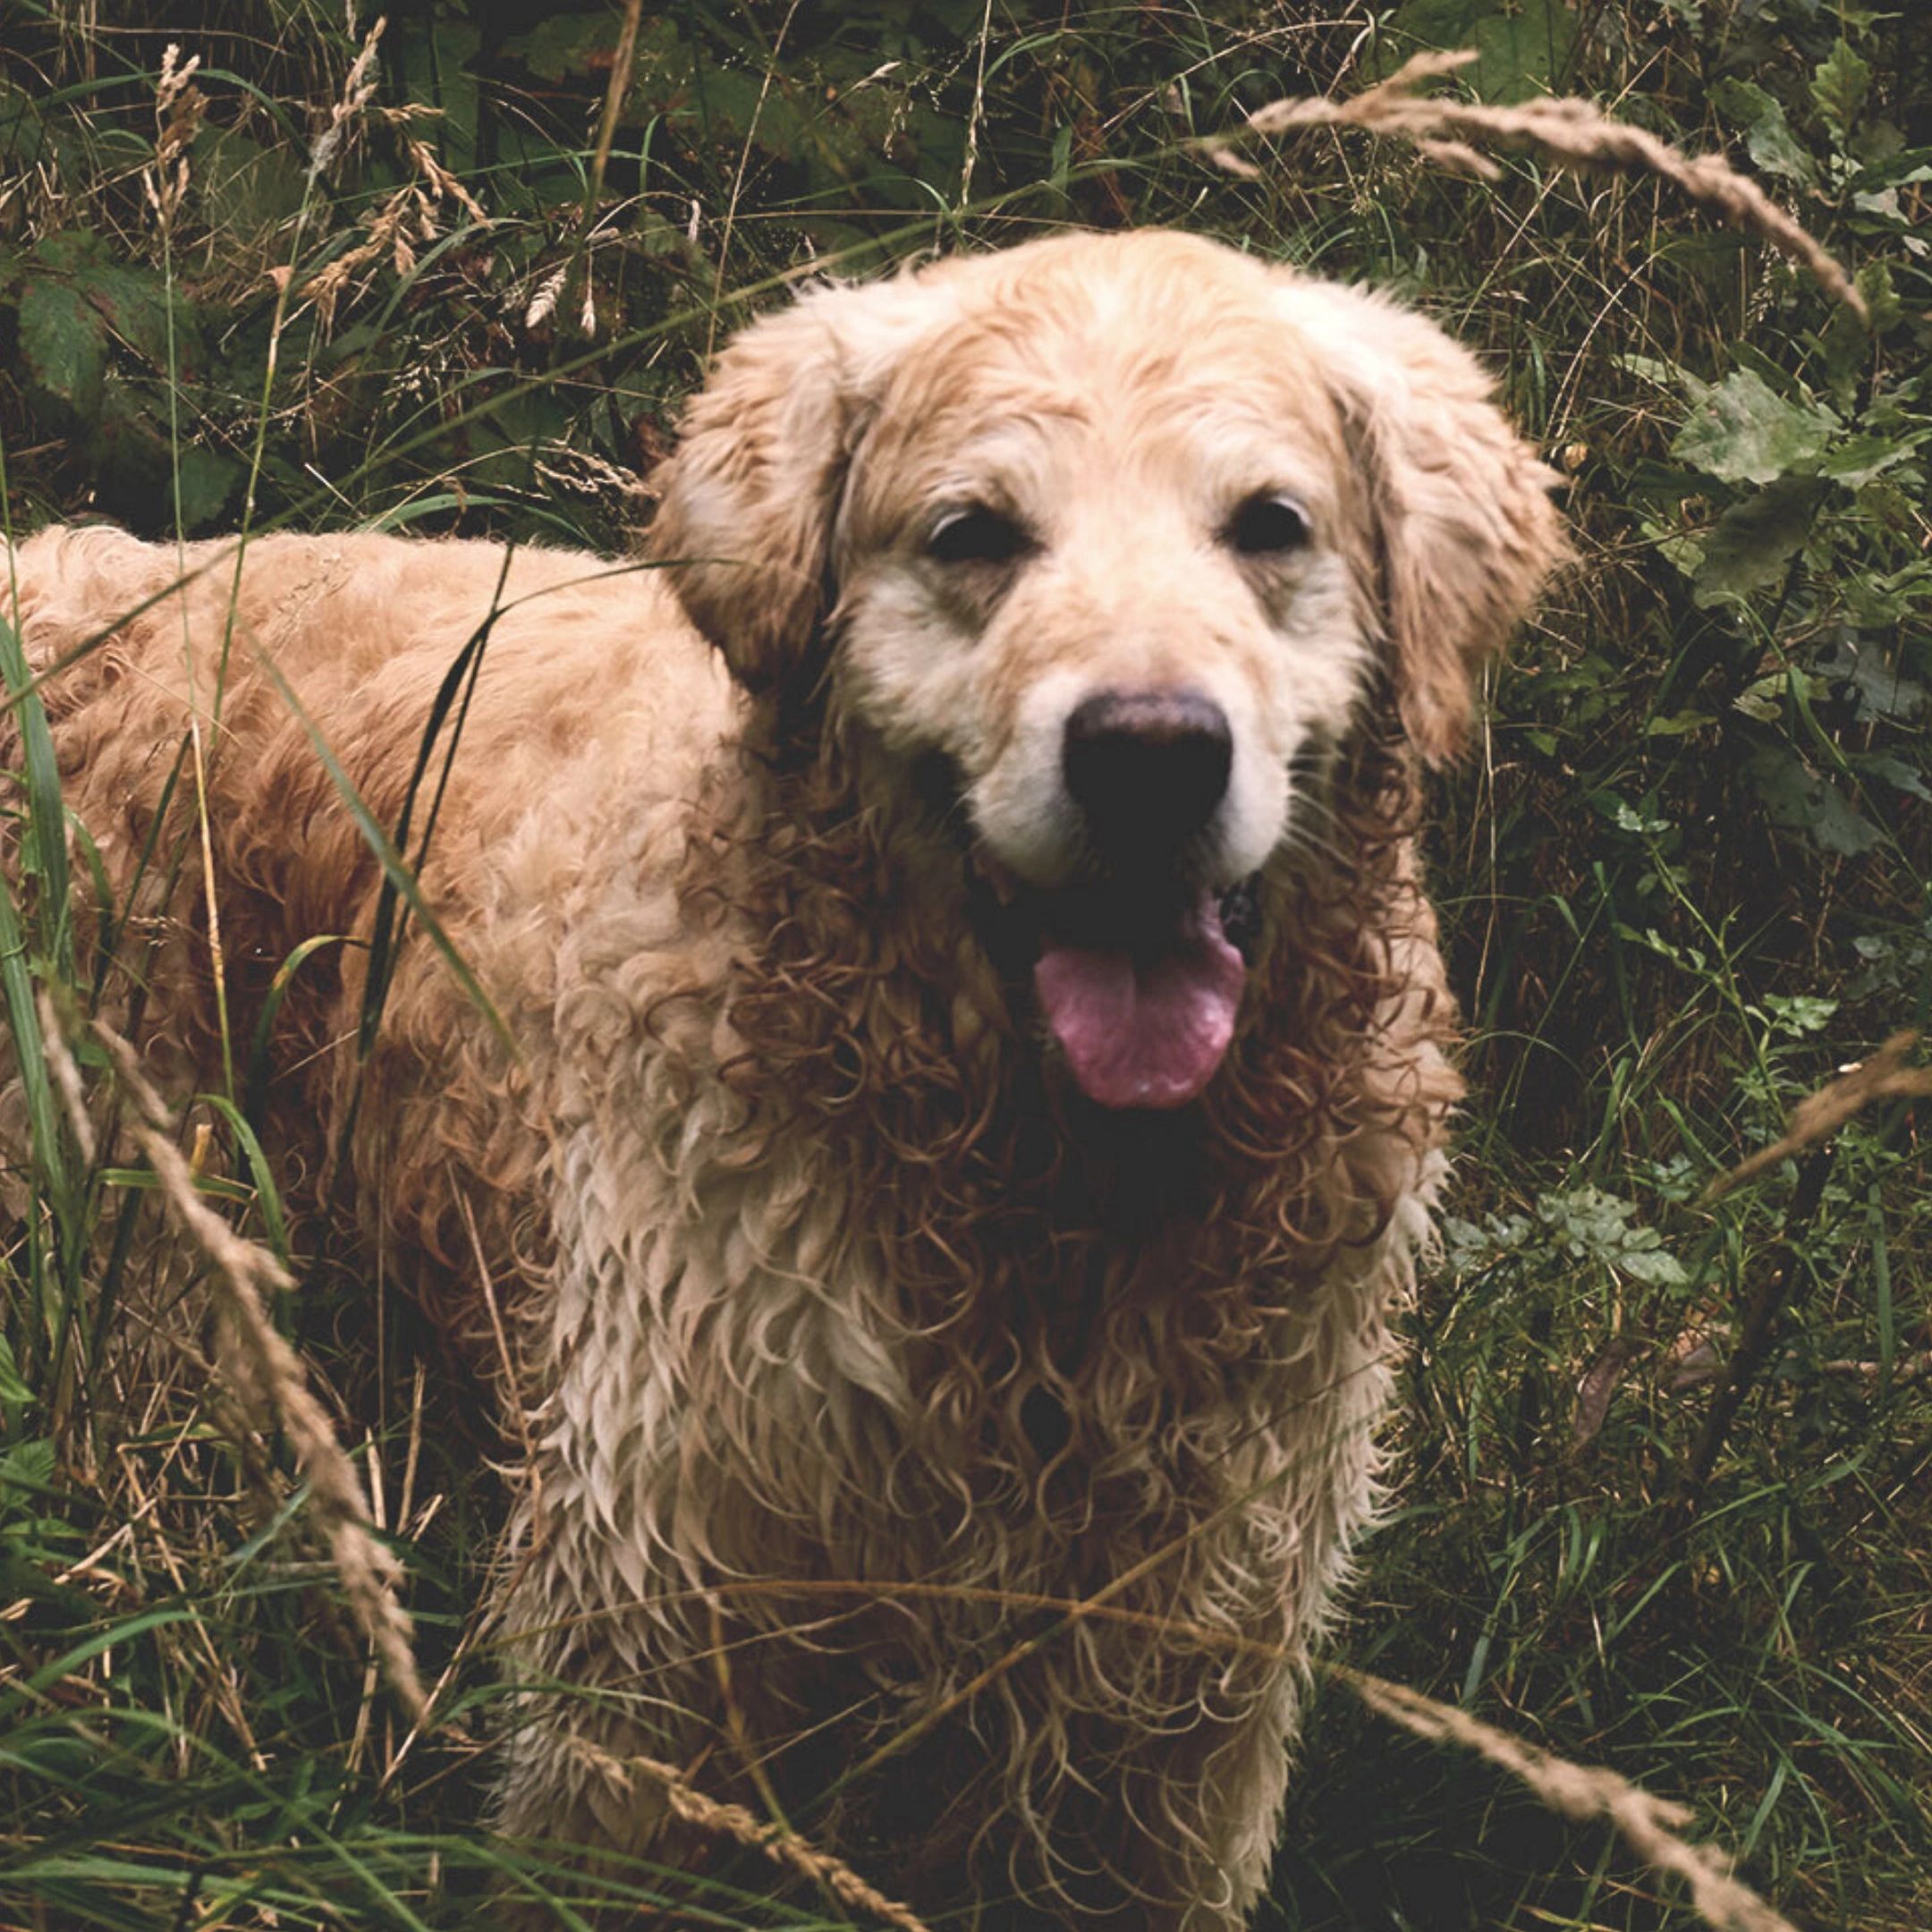 Muddy dog needing a bath